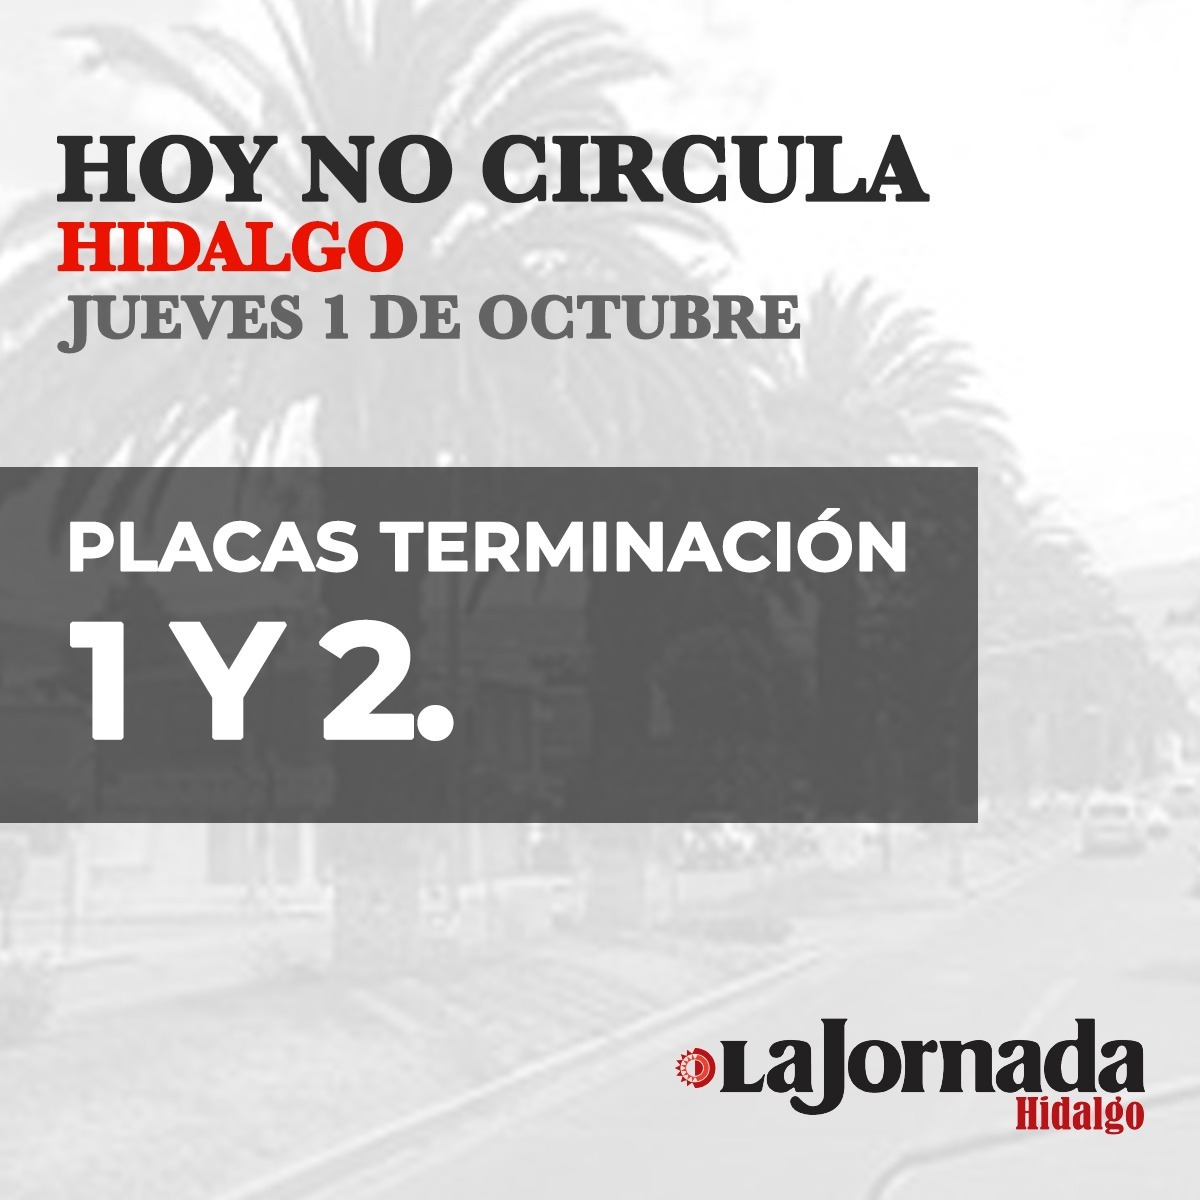 Hoy-No-Circula-Hidalgo-jueves-1-de-octubre-2020